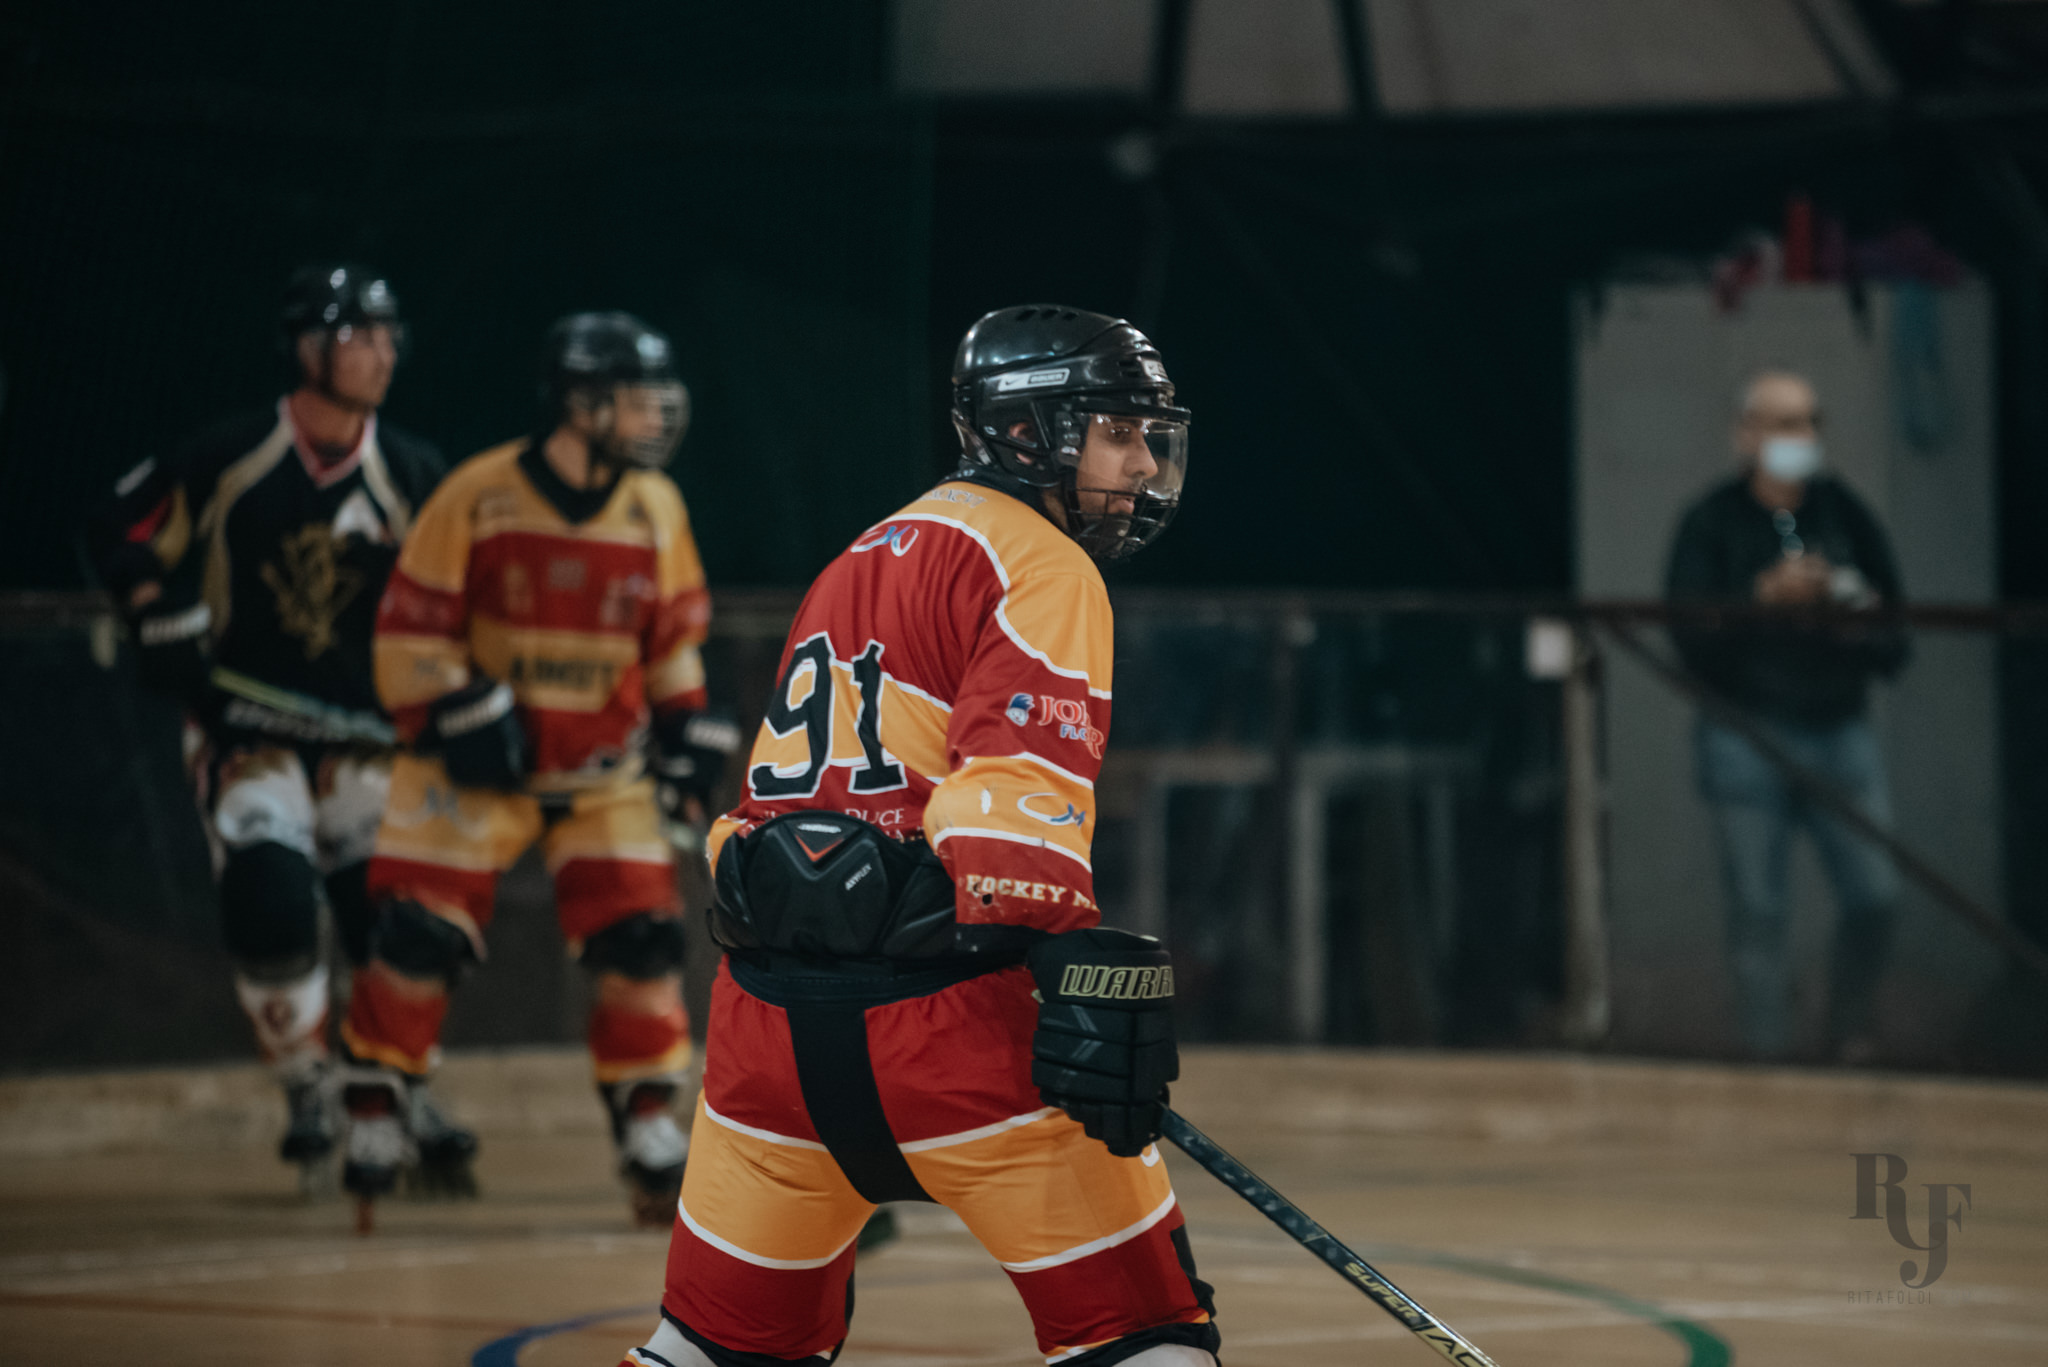 hockey roma, inline hockey roma, rome hockey team, legnaro fox, sports photography rome, pattinaggio a roma